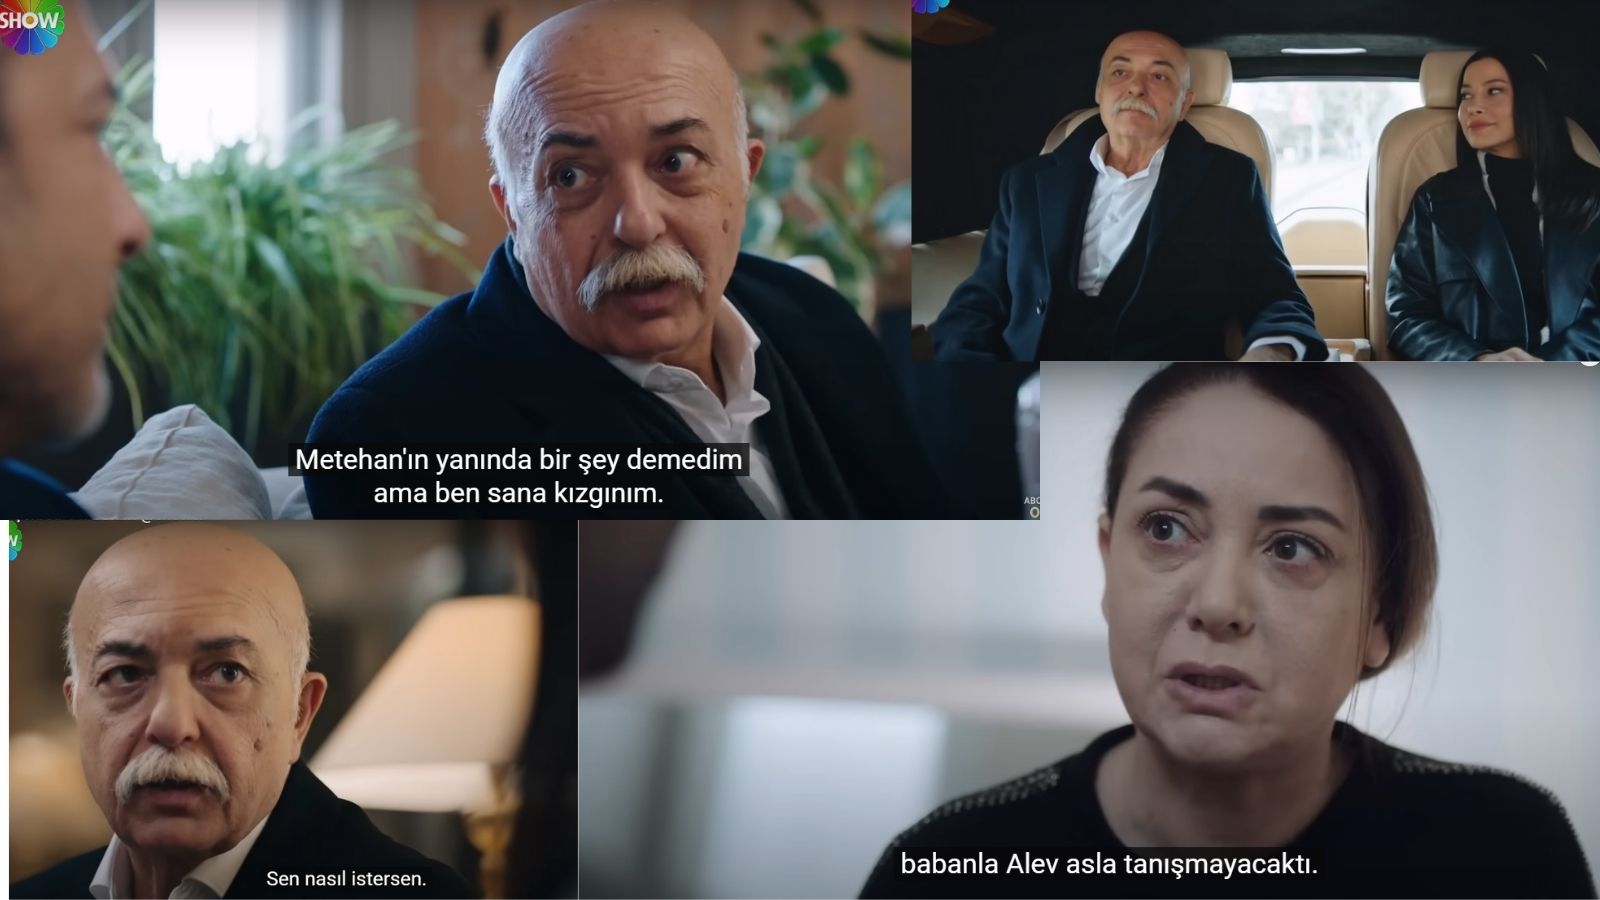 Kızılcık Şerbeti'nde Abdullah karakteriyle tanınan oyuncu Settar Tanrıöğen'in sağlık durumuyla ilgili yeni bir açıklama yapıldı.